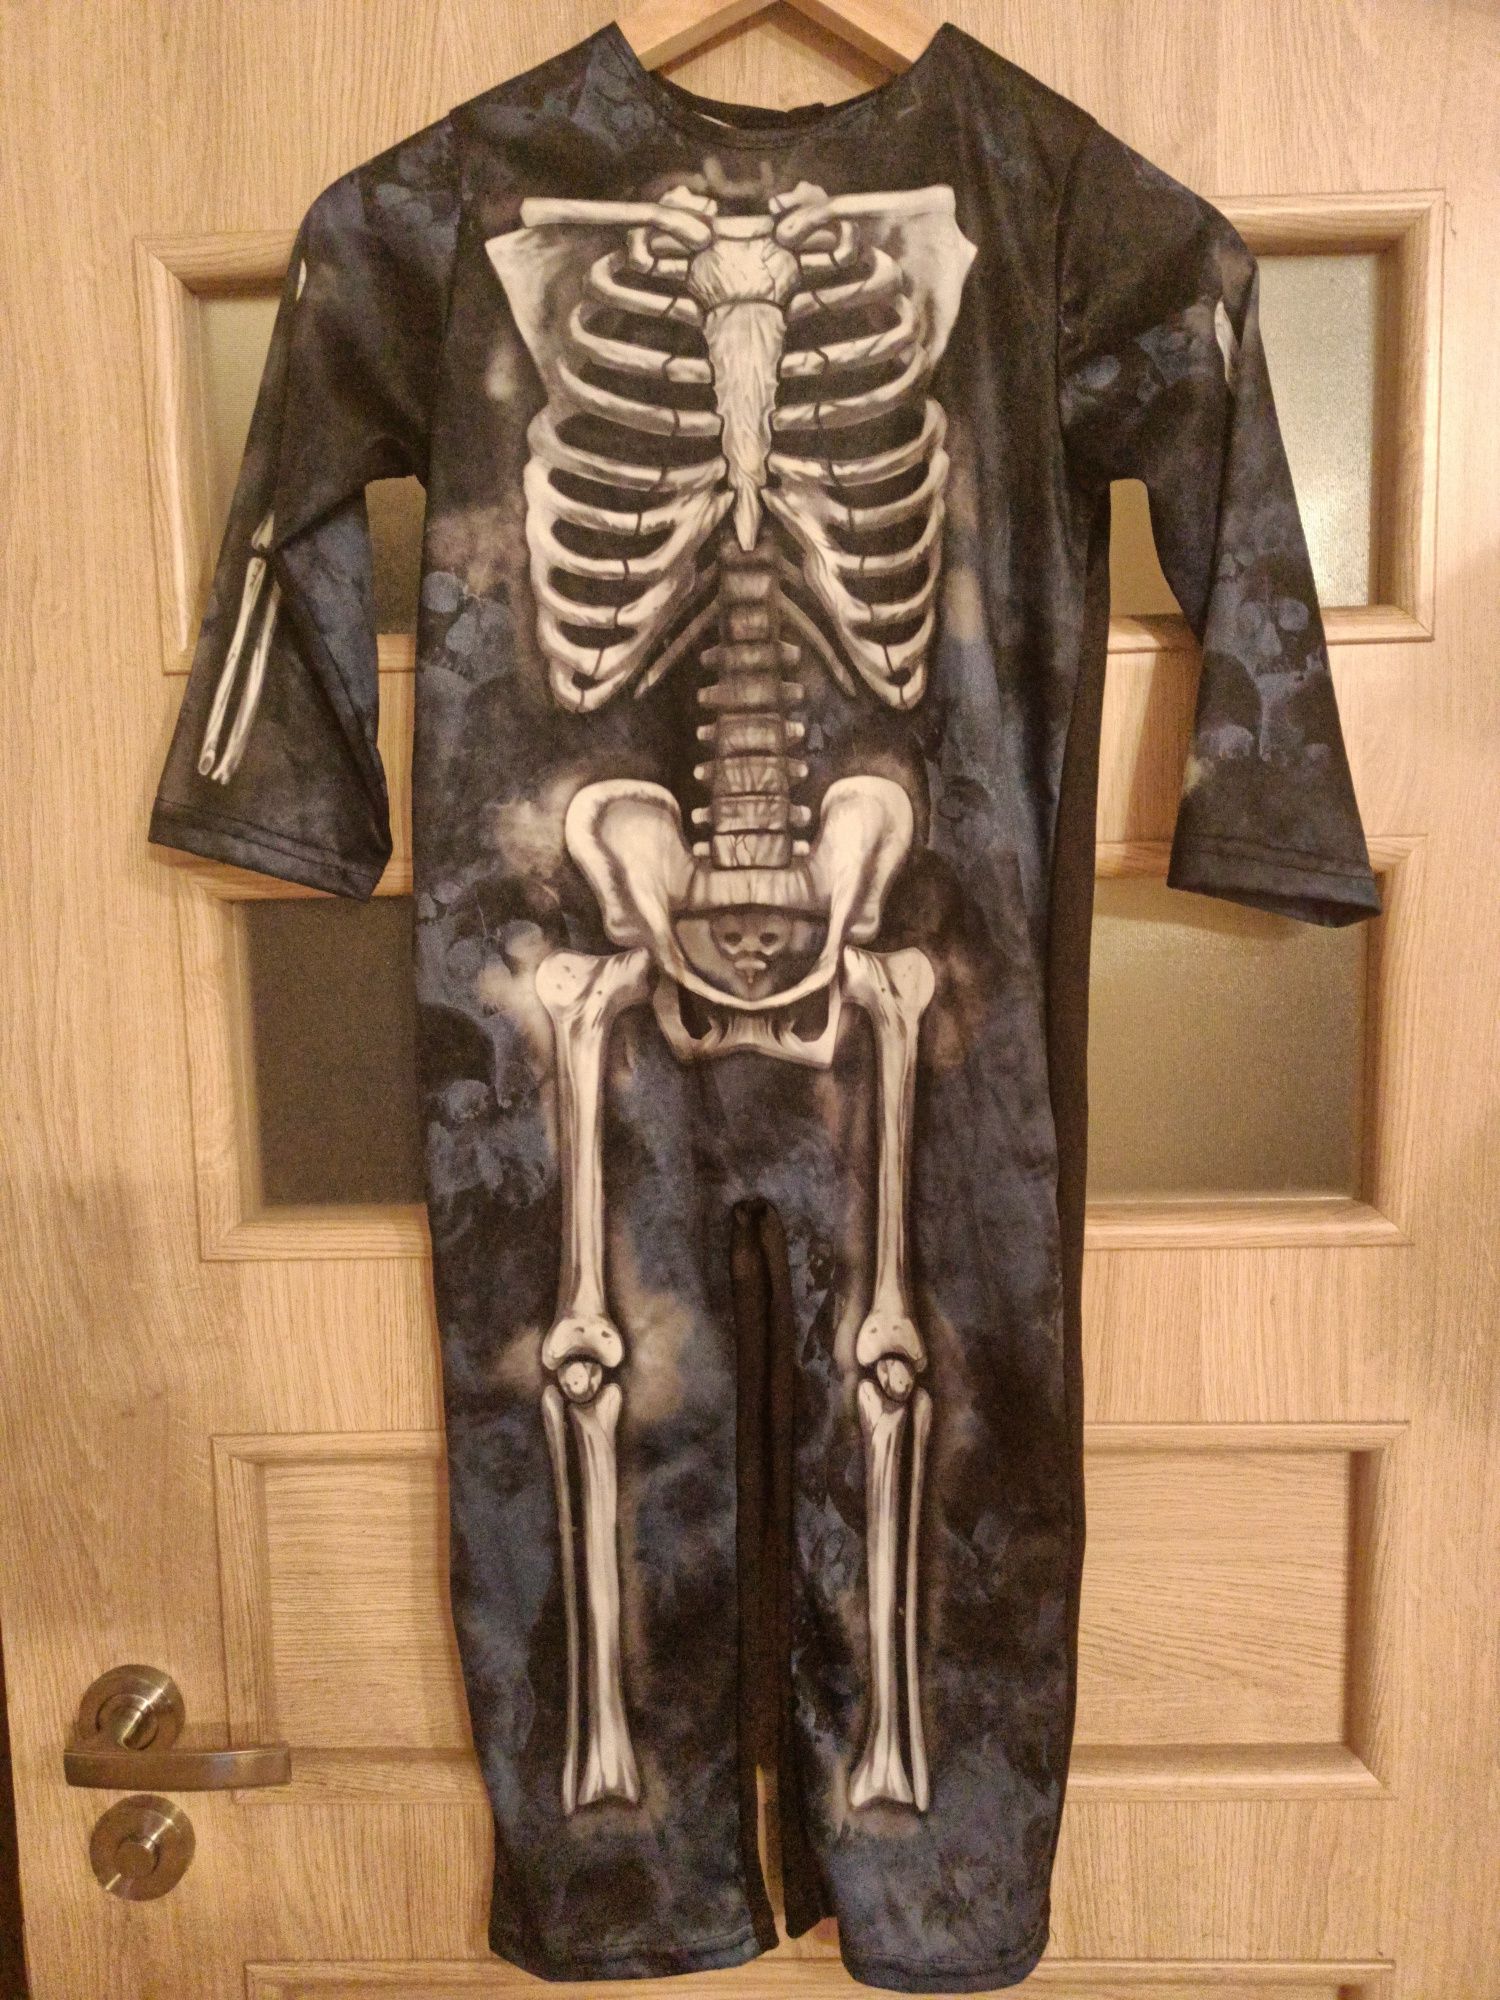 Strój kostium przebranie halloween kosciutrup szkielet